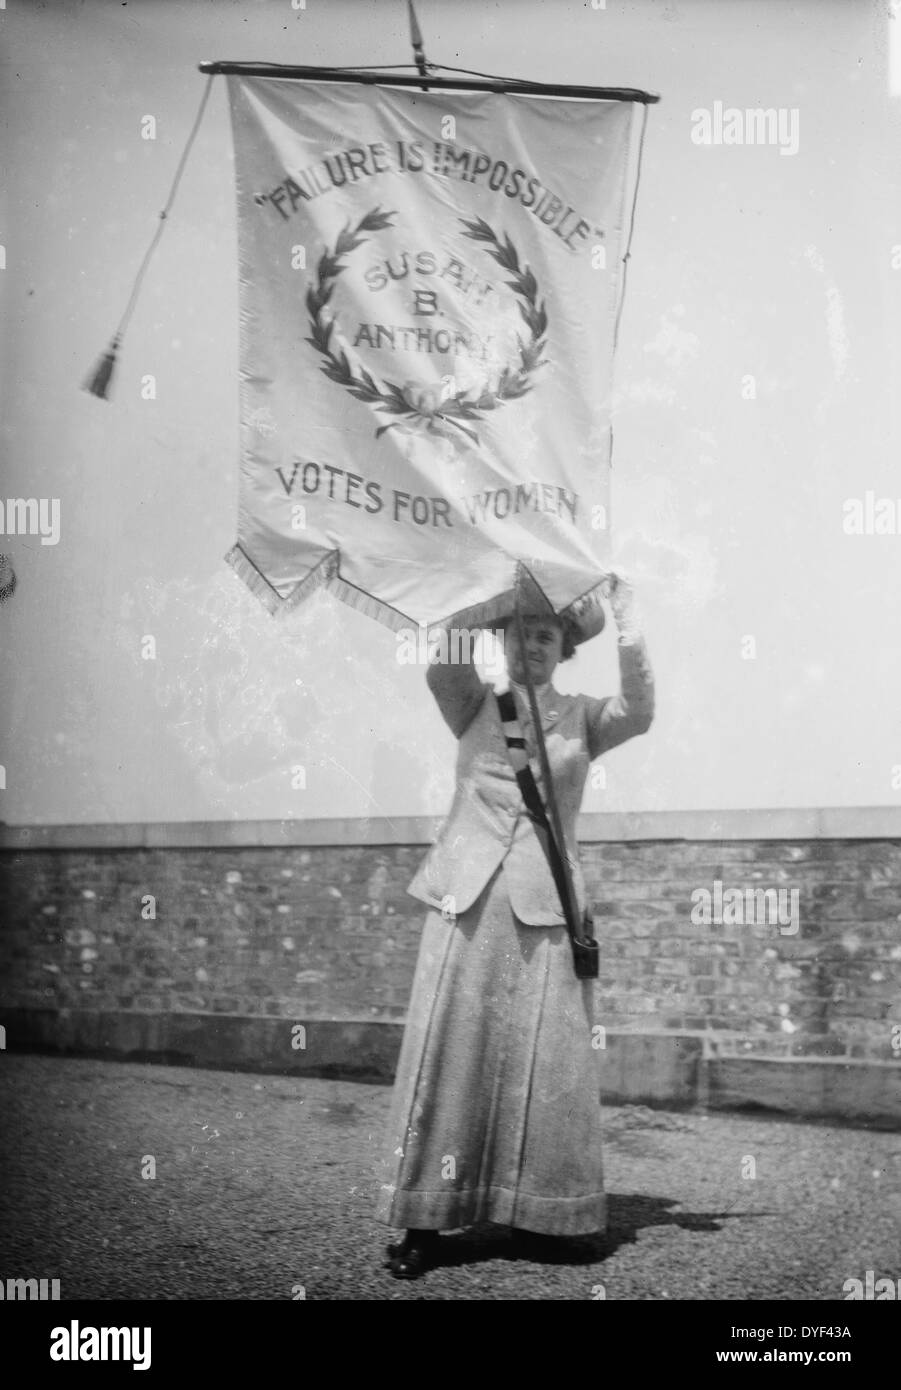 Scheitern ist nicht möglich. Susan B. Anthony. Stimmen für Frauen 1913. Foto zeigt suffragist Florenz Jaffray 'Daisy' Harriman halten ein Banner mit der Aufschrift "unmöglich ist. Susan B. Anthony. Stimmen für die Frauen" Stockfoto